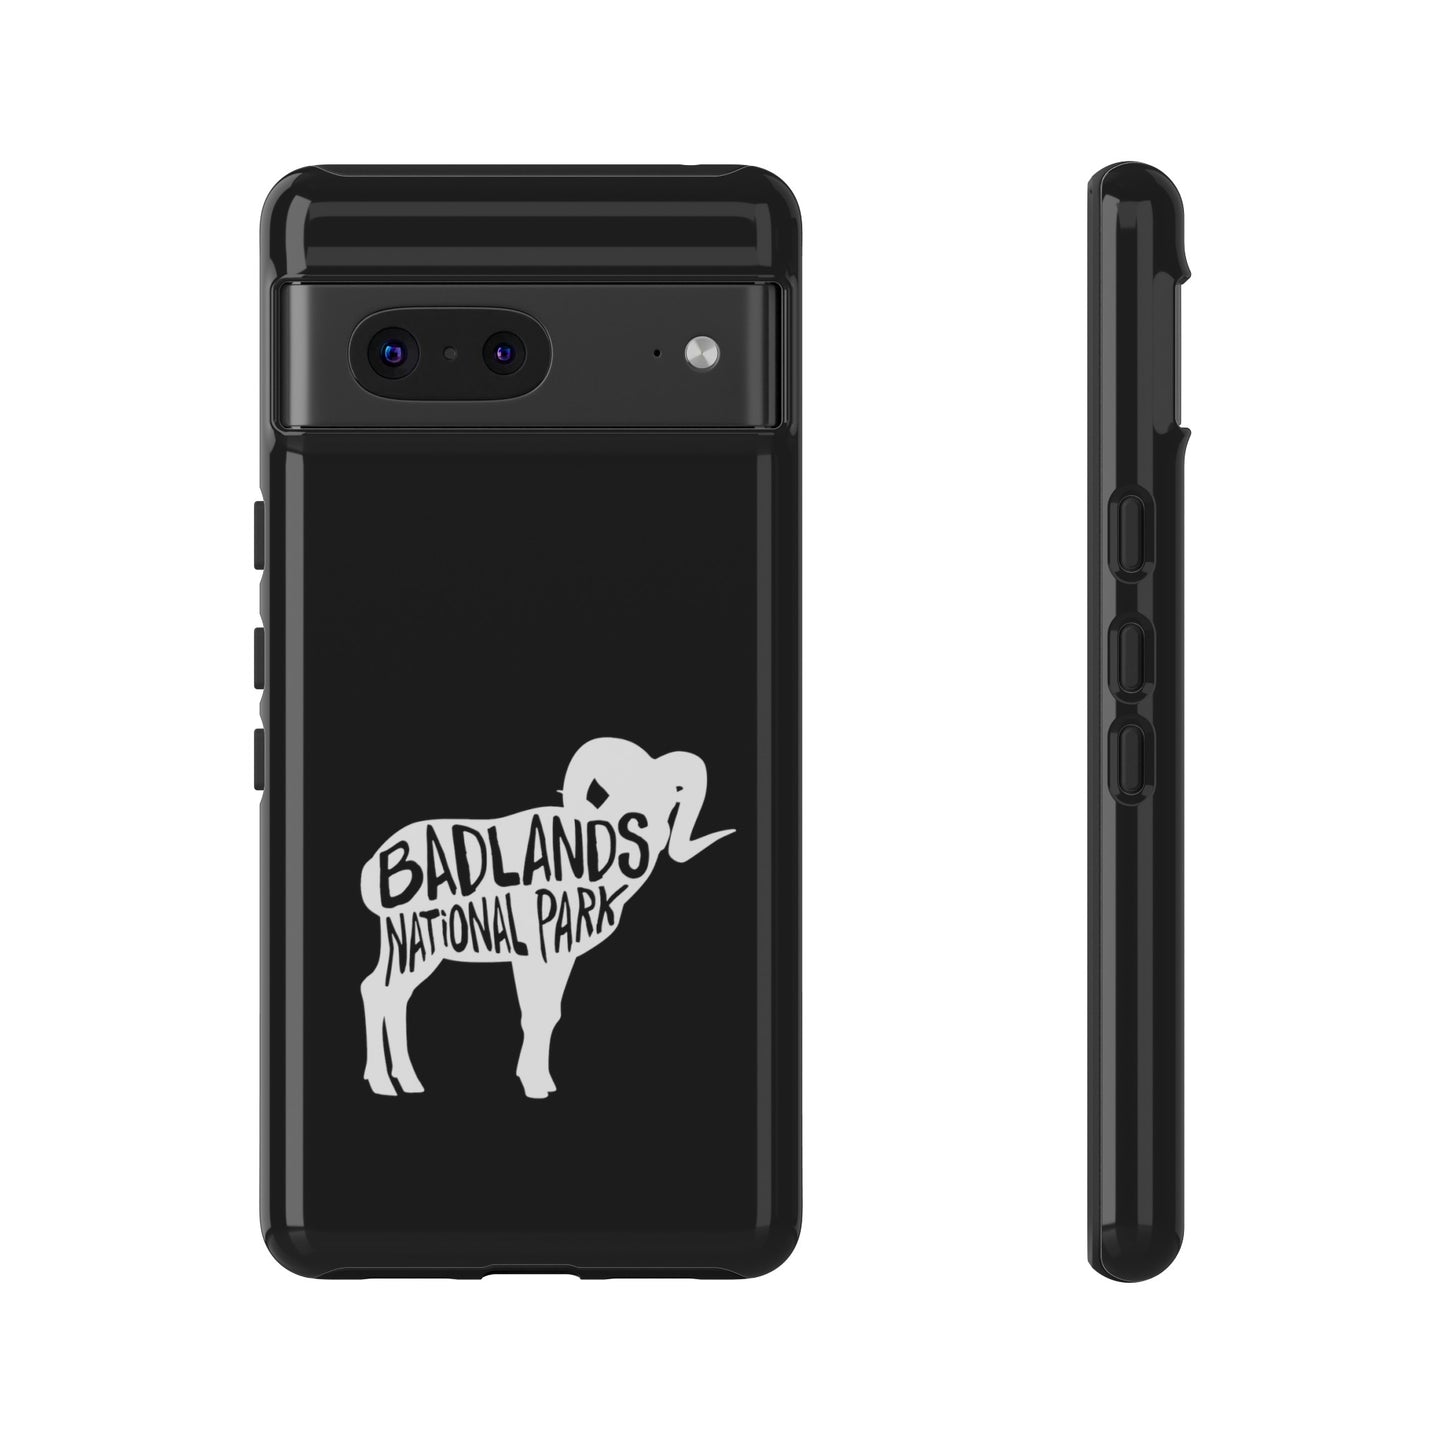 Badlands National Park Phone Case - Bighorn Sheep Design